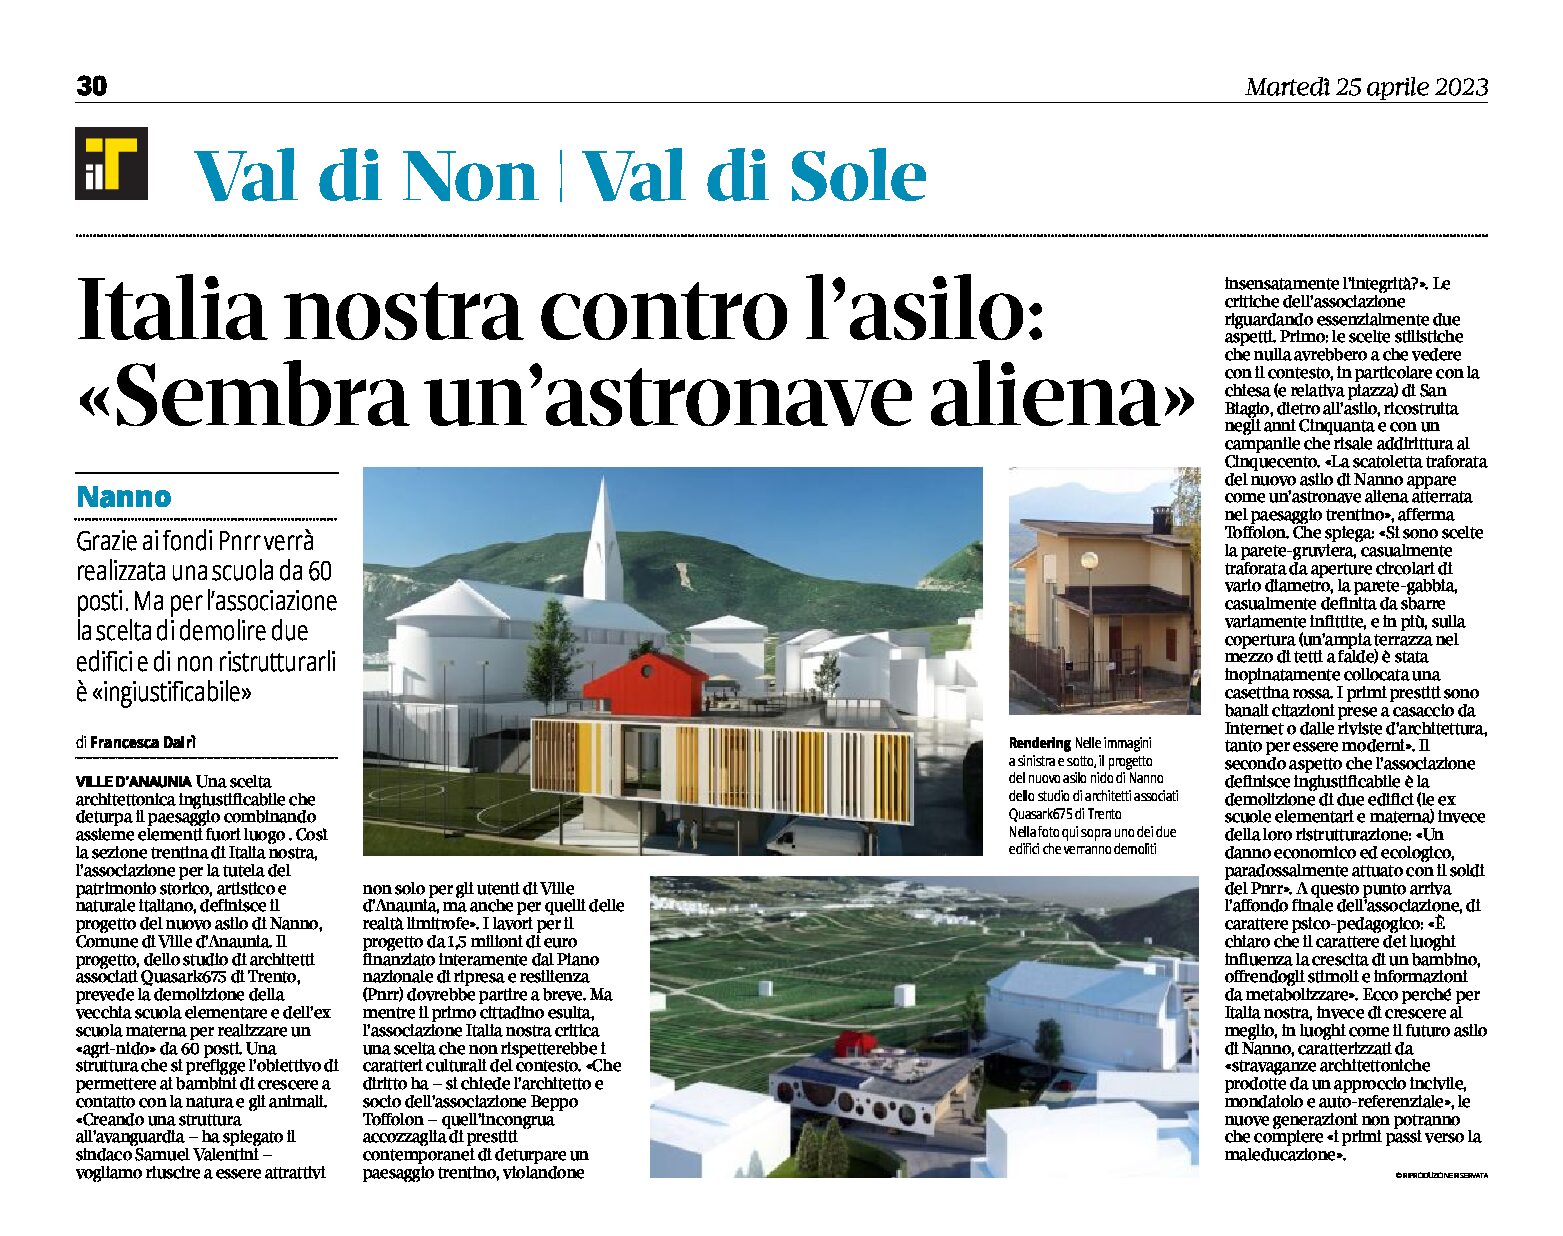 Italia Nostra: contro l’asilo di Nanno “sembra un’astronave aliena”